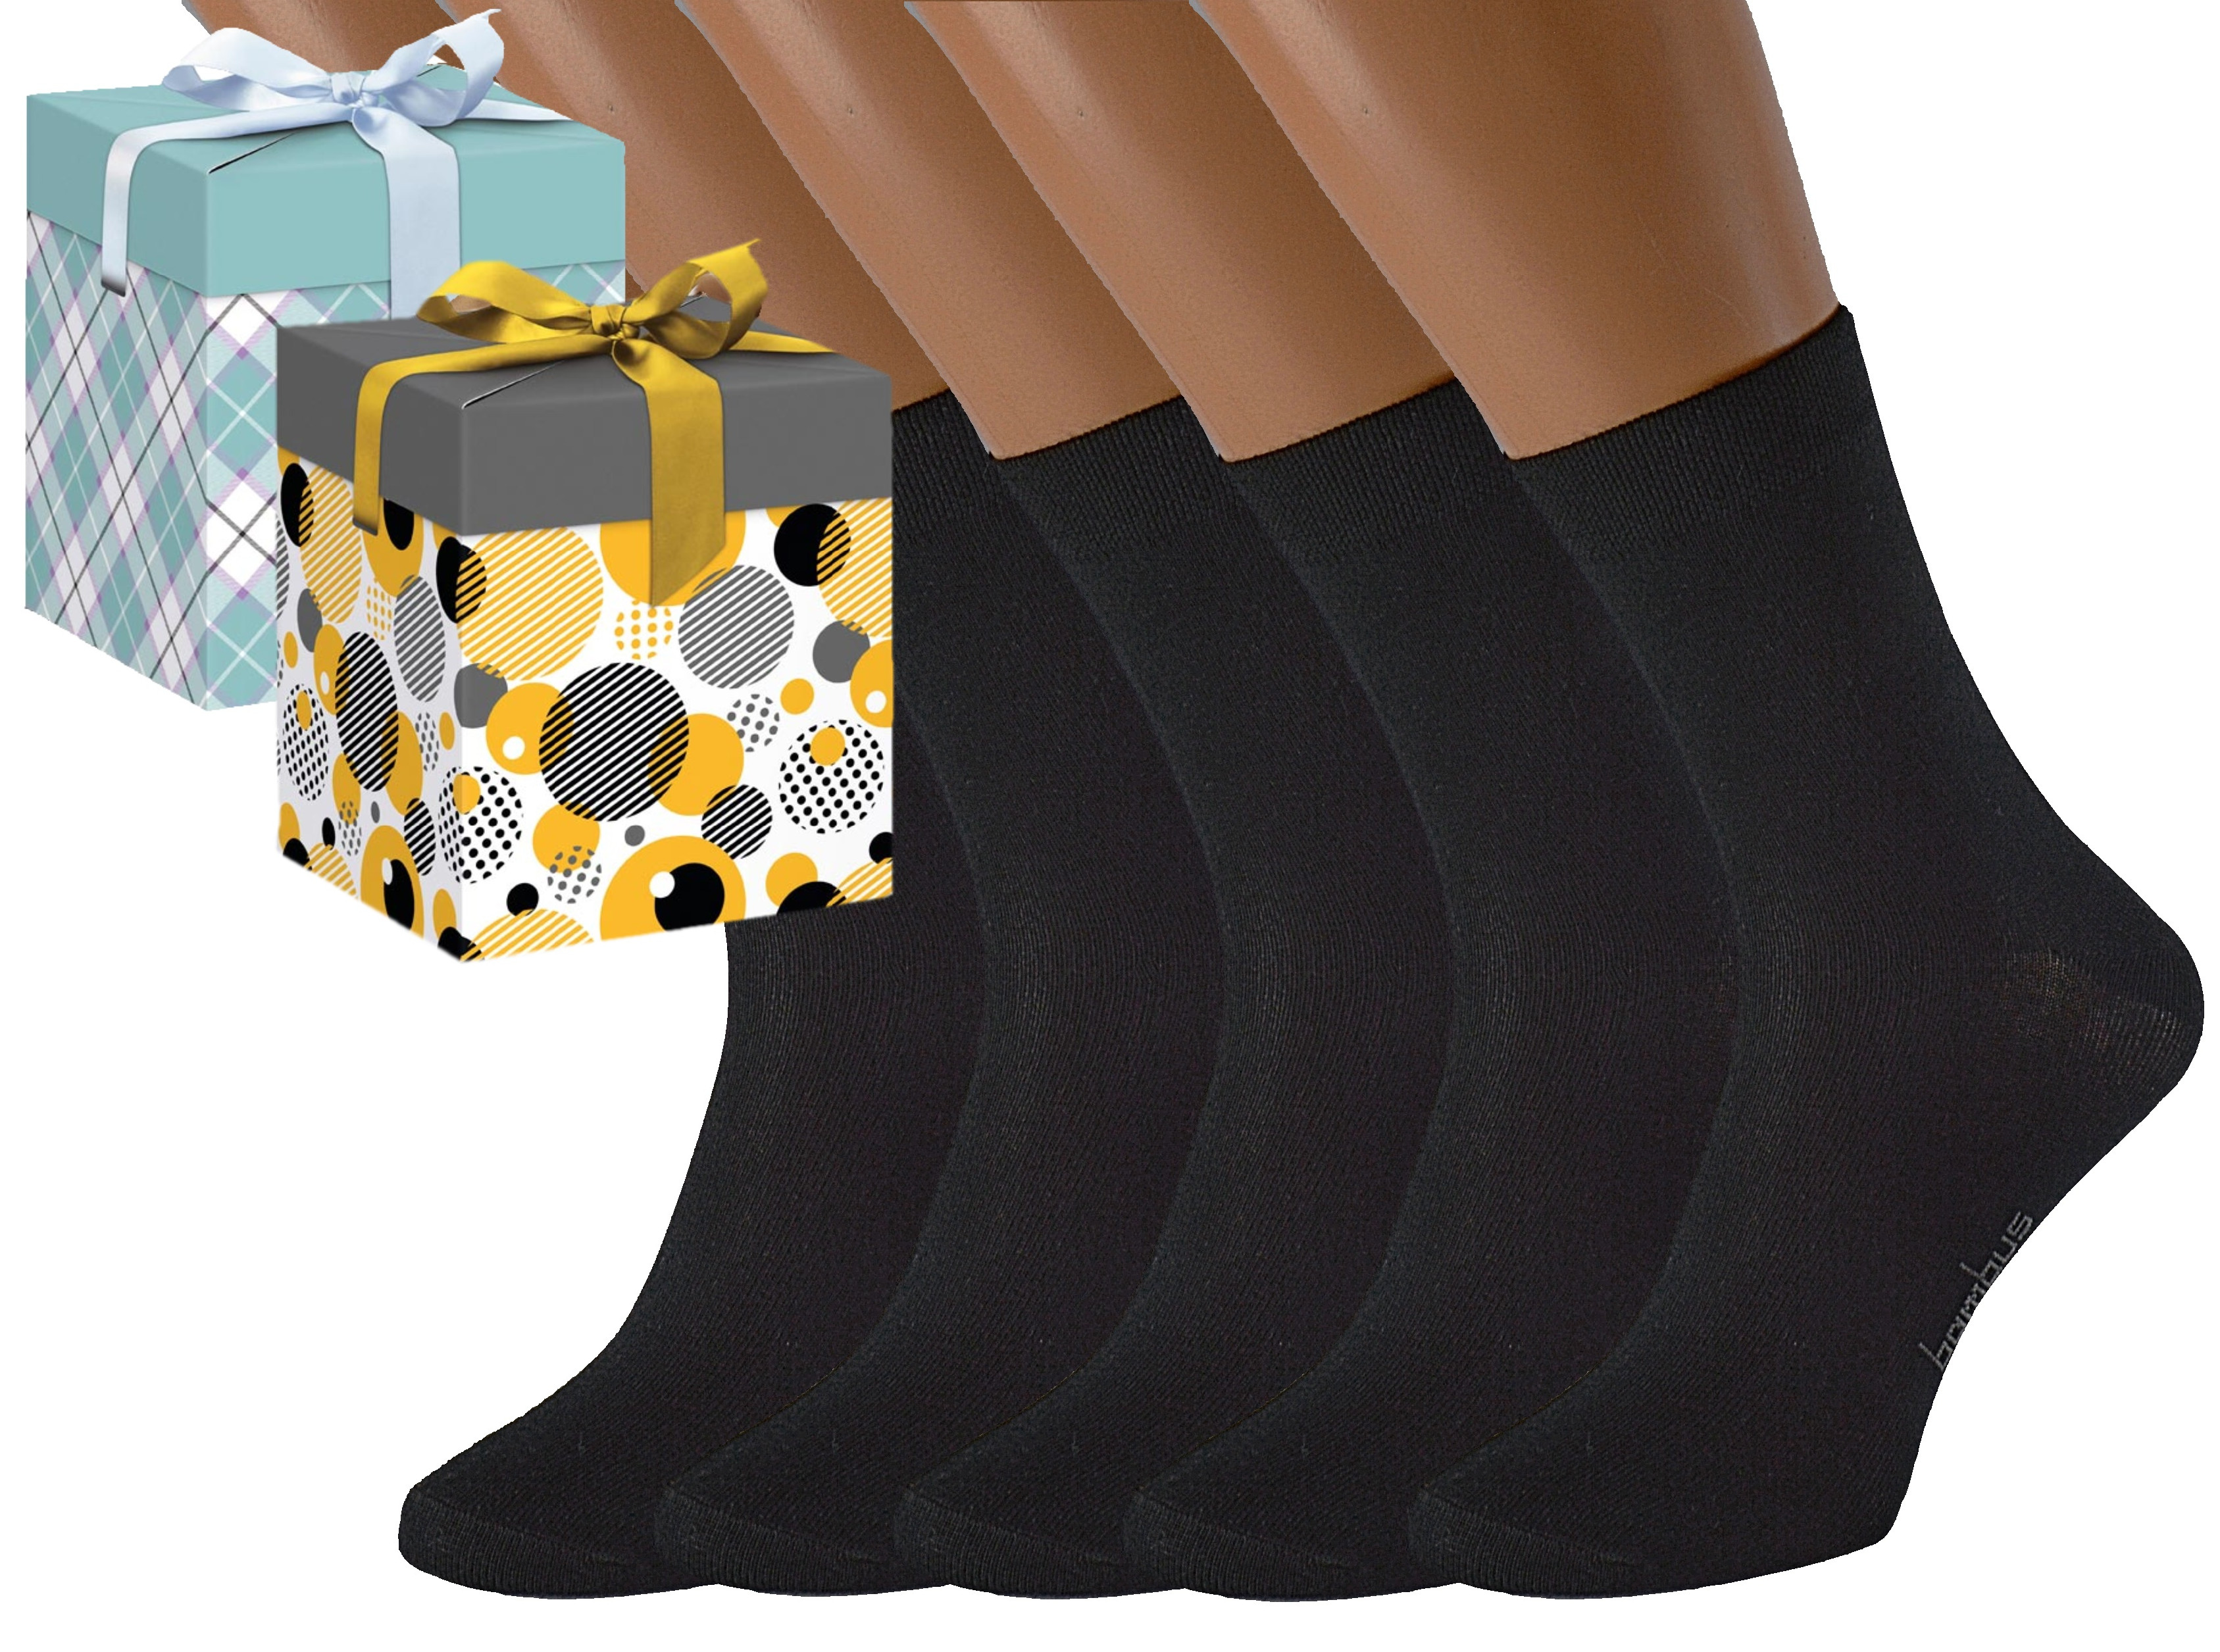 Produkt Dárkové balení 5 párů bambusových ponožek BAMBOO Barva: Černé, Velikost: EUR 39-42 (UK 6-8), Zvolte variantu dárkového balení: Mint kostkovaná